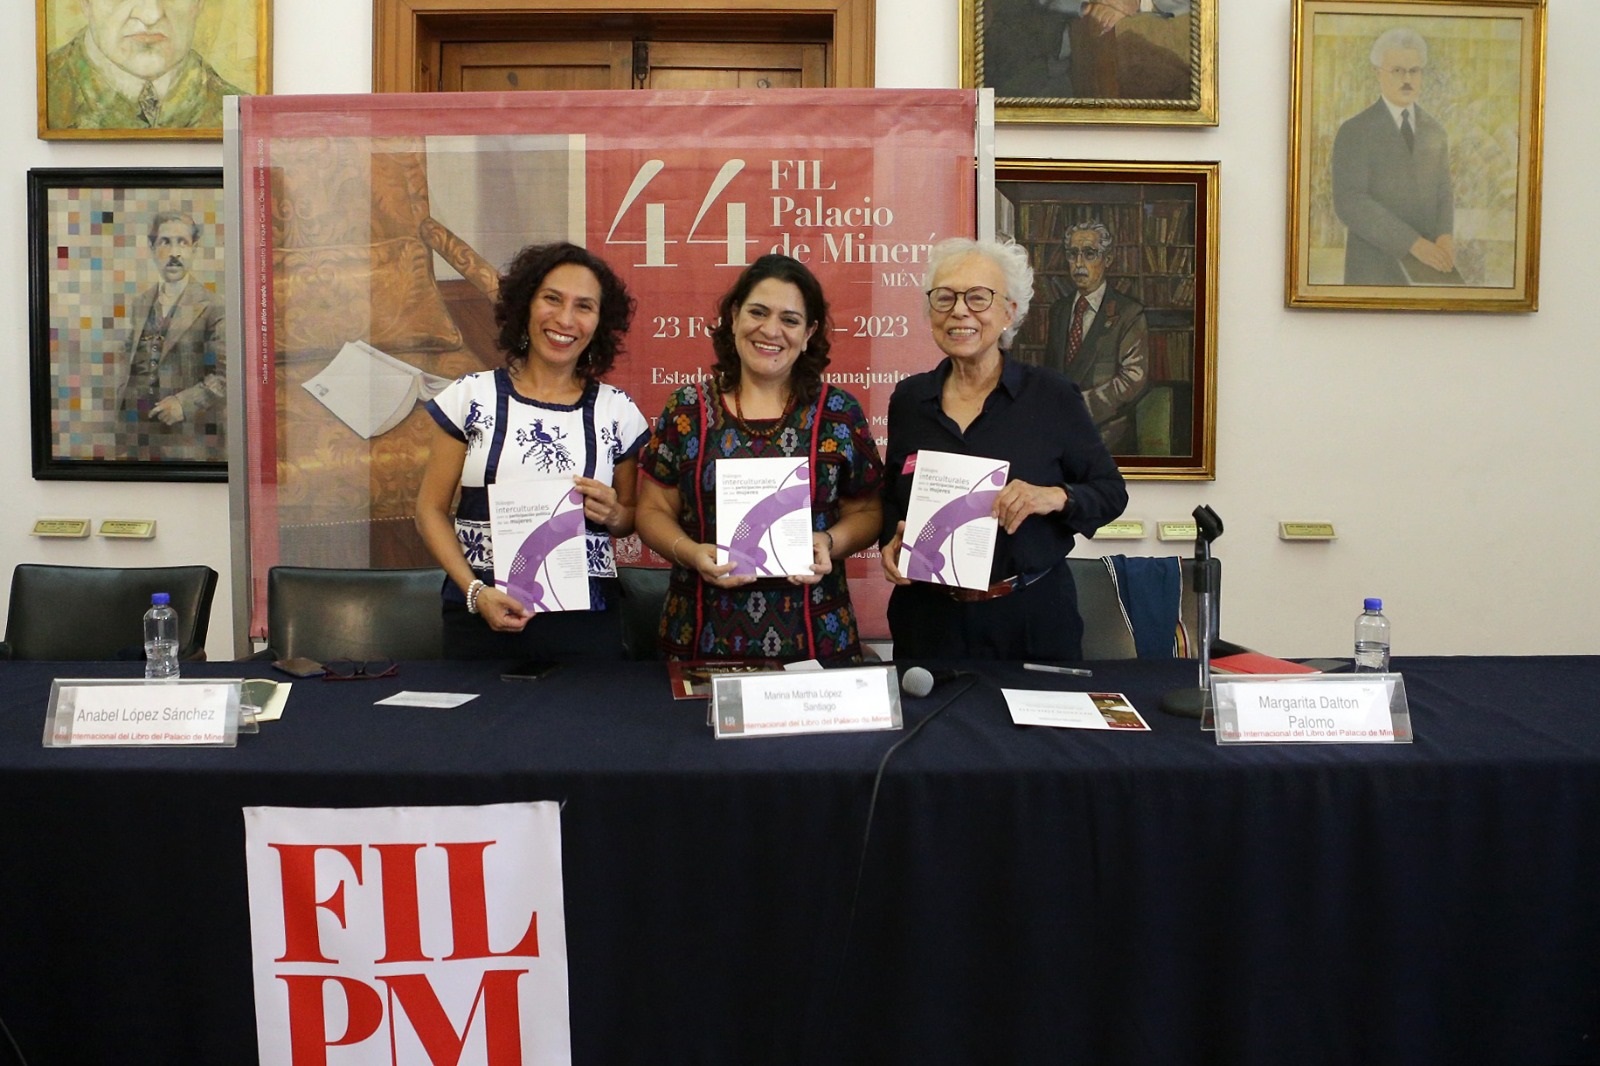 En la 44 FIL Palacio de Minería se presenta libro sobre los retos interculturales a los que se enfrentan mujeres indígenas y afromexicanas para participar en asuntos públicos